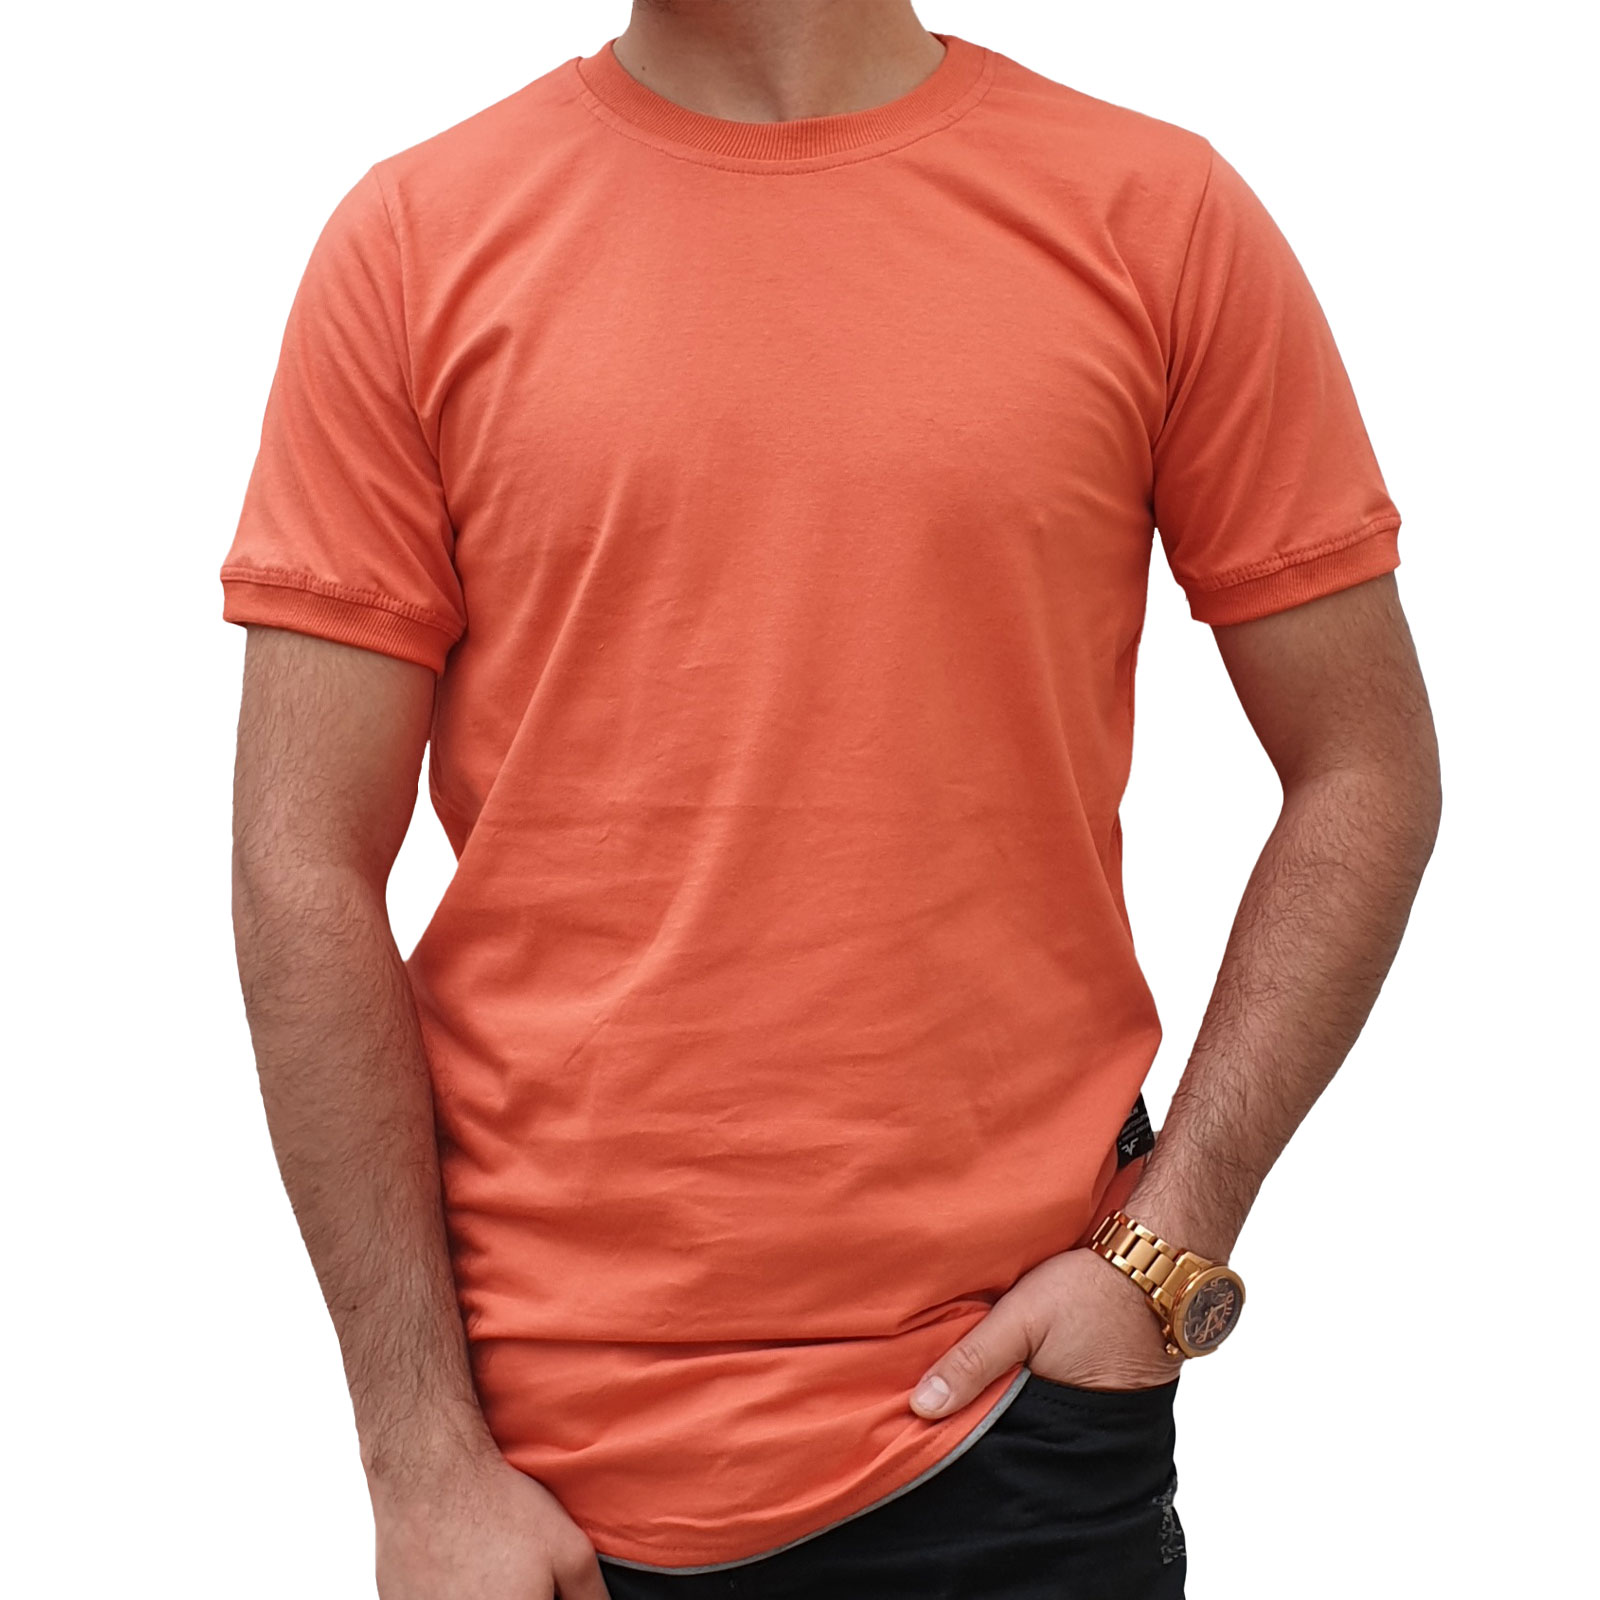 تی شرت ساده نخی مردانه مدل PRVT01